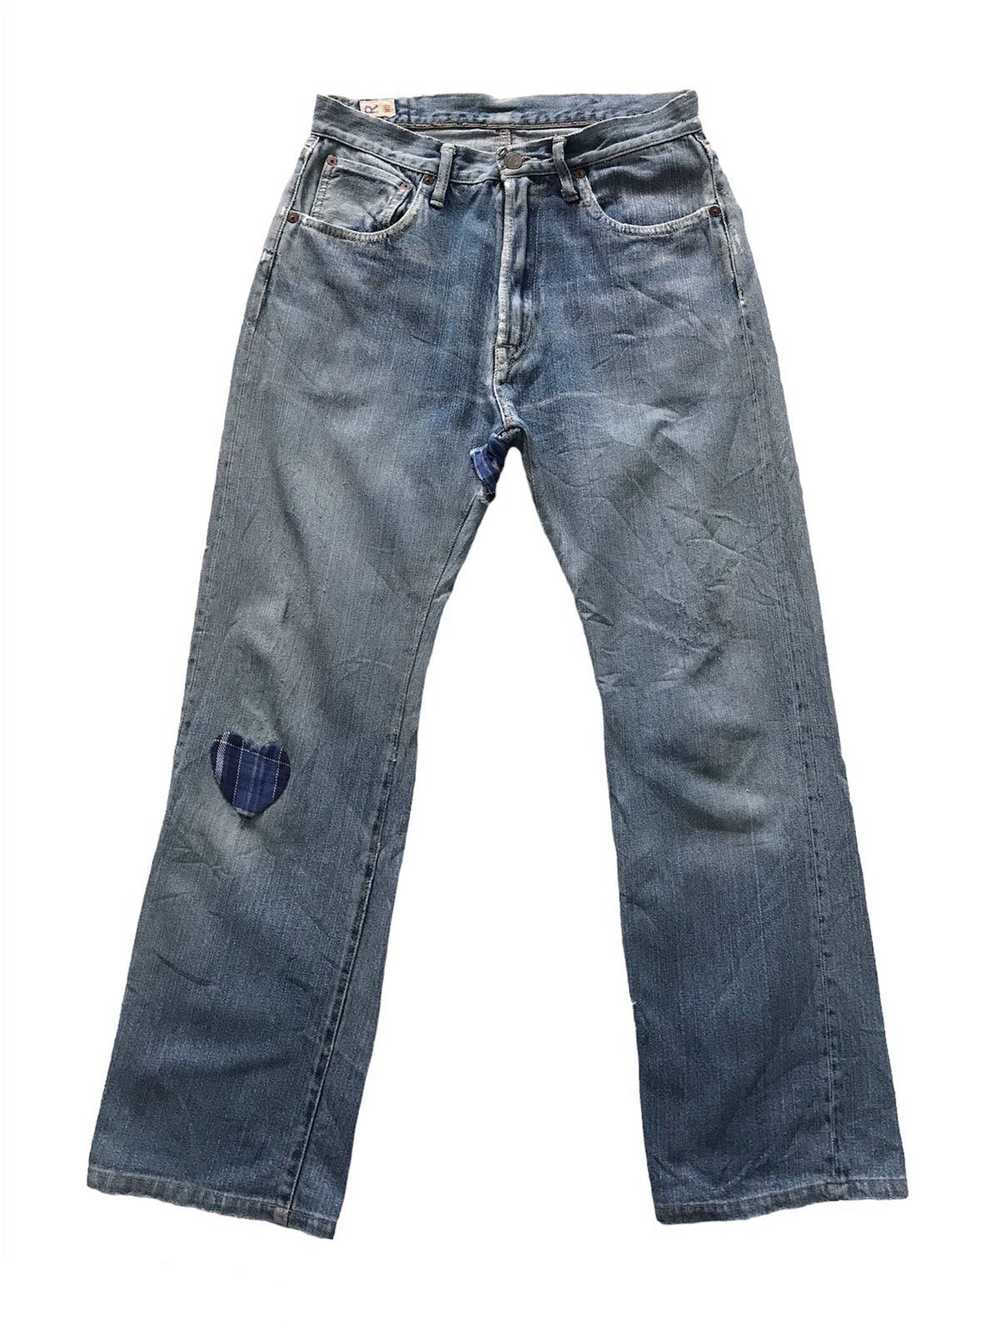 45rpm - Distress R 45 Rpm Denim Jeans Pant - image 1